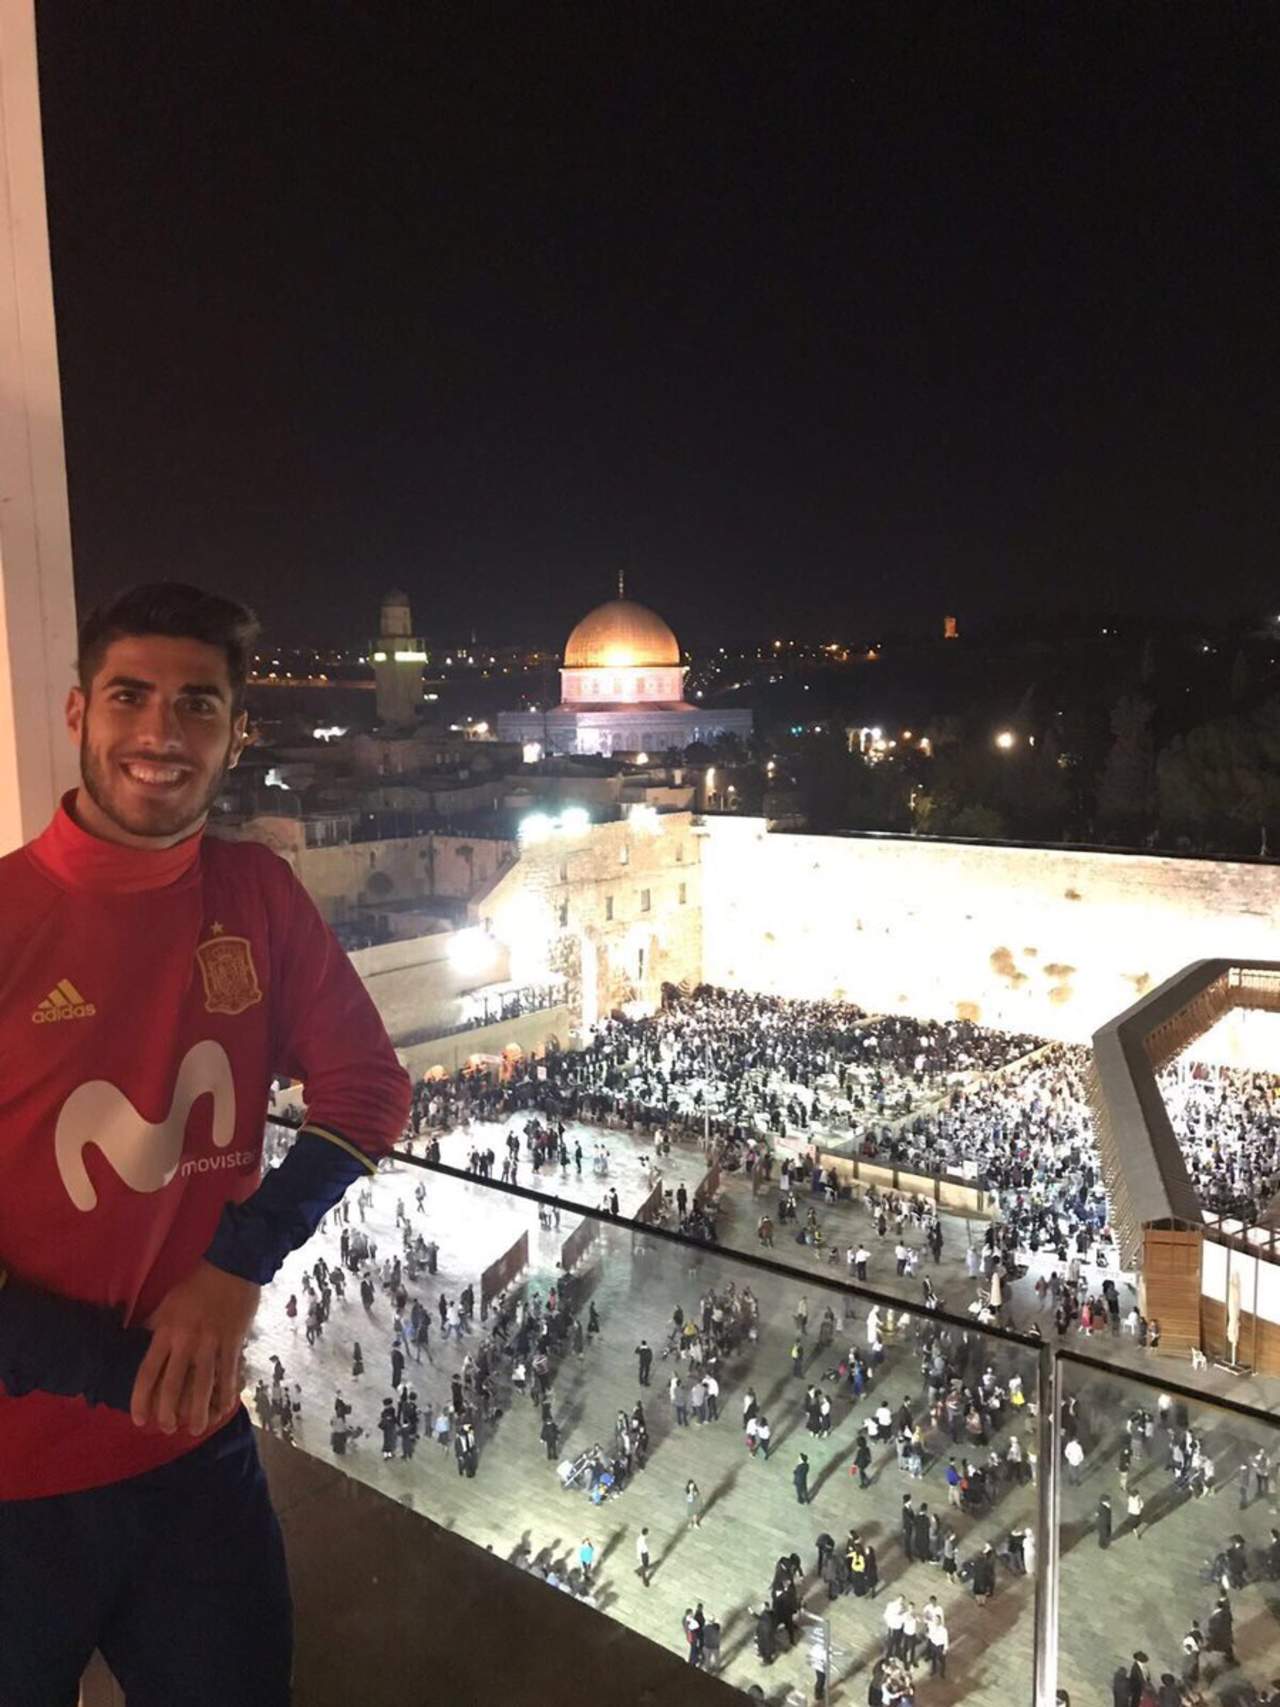 Seguidores proisraelíes, por su parte, se enzarzan en los comentarios contra los propalestinos, alabando al jugador y afirmando que la foto sí está tomada en Israel.
